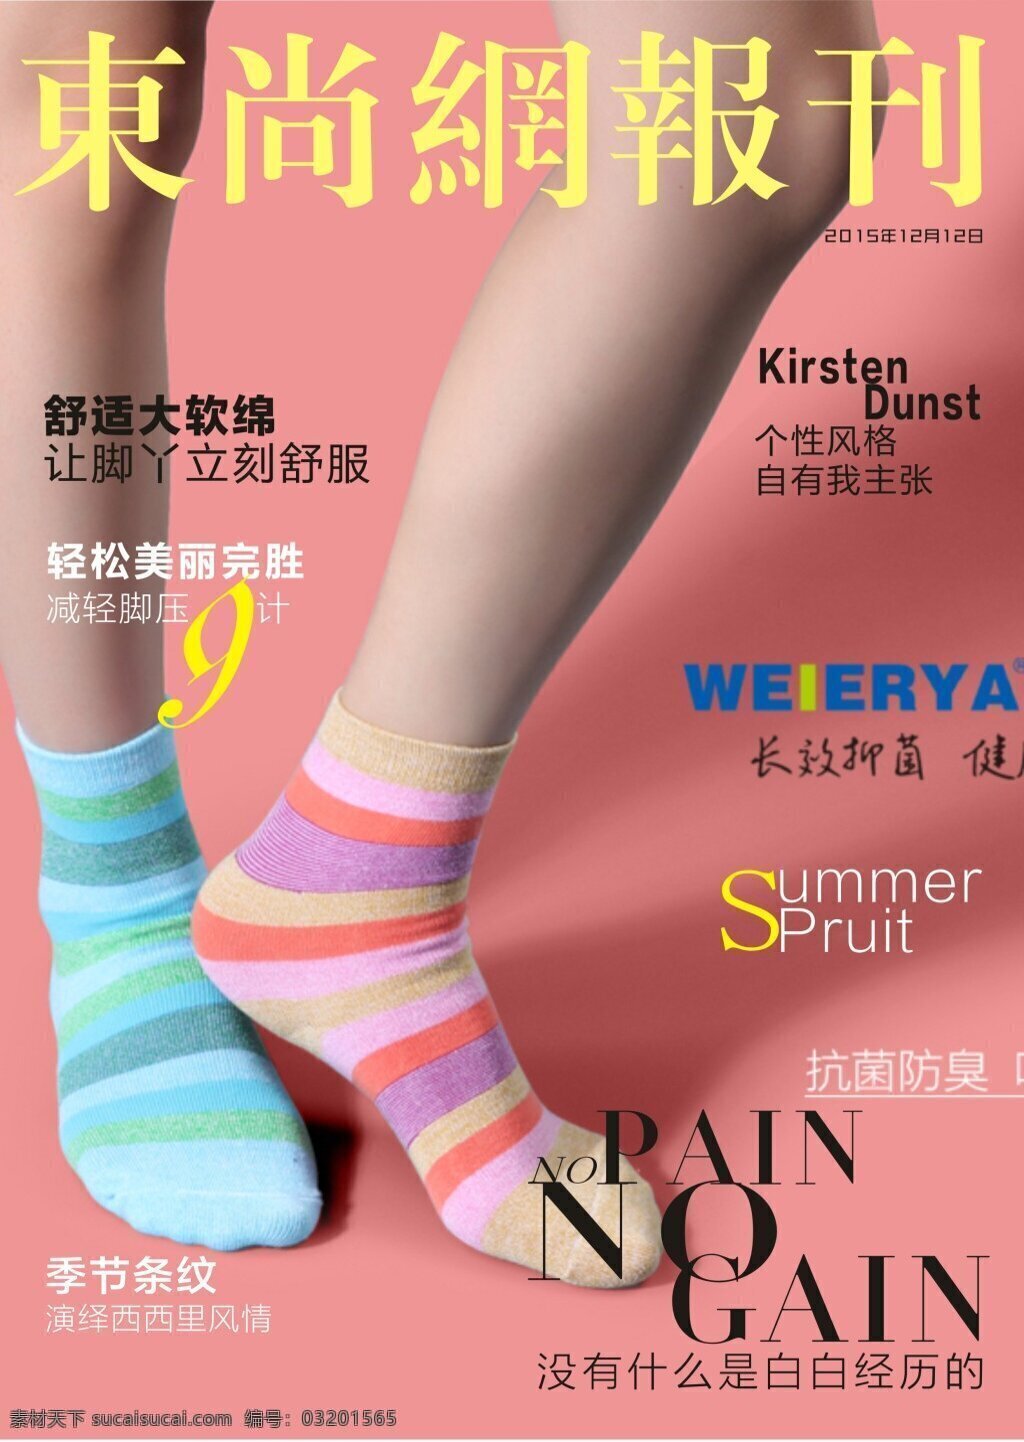 袜子海报封面 袜子 可以 混 穿 时尚 个性 粉色